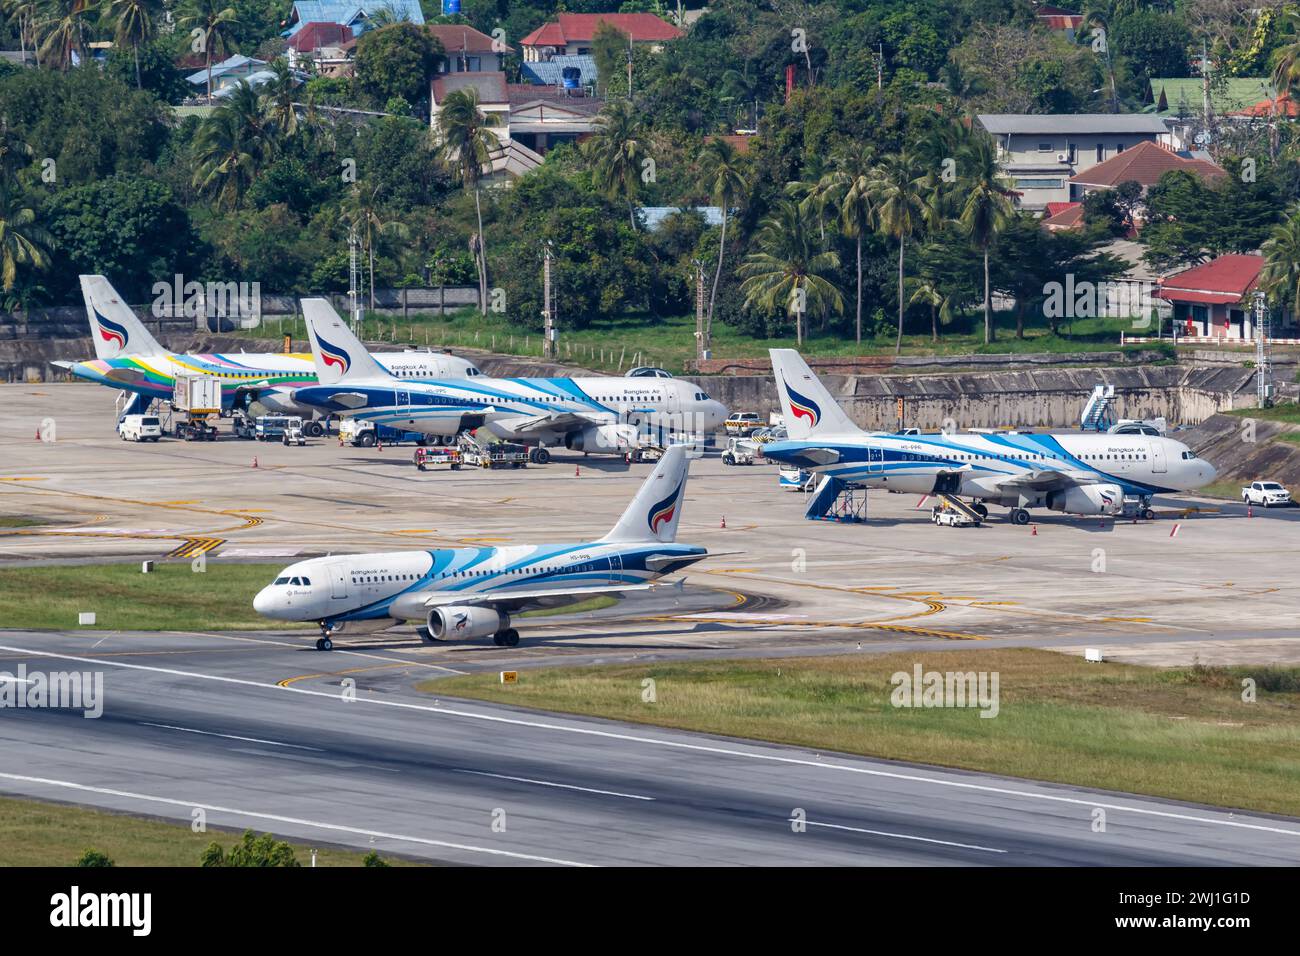 Bangkok Air Airbus A319 aircraft Ko Samui Airport in Thailand Stock Photo